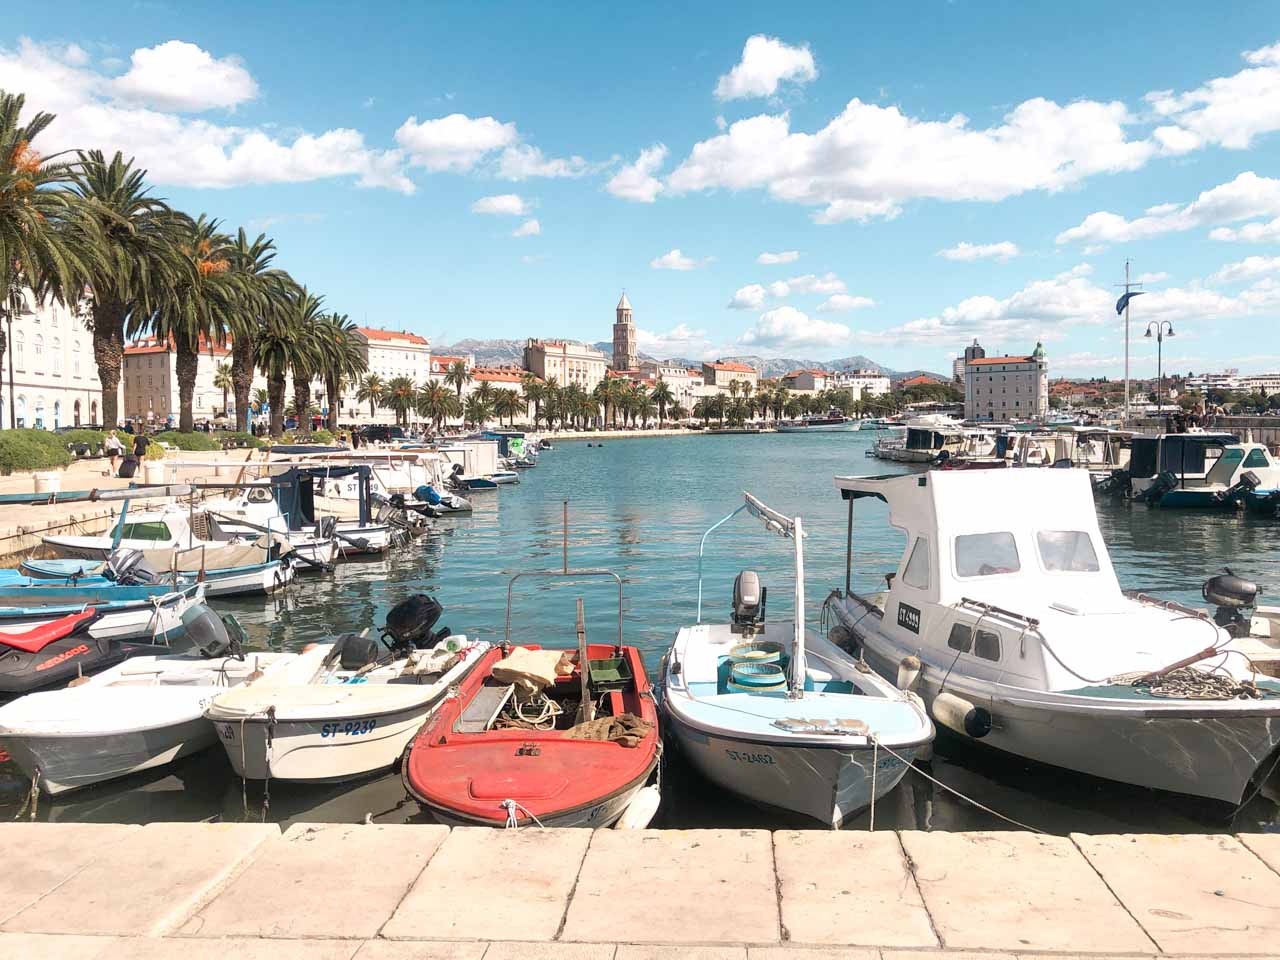 Small boats docked in Riva Harbor - waterfront promenade in Split, Croatia